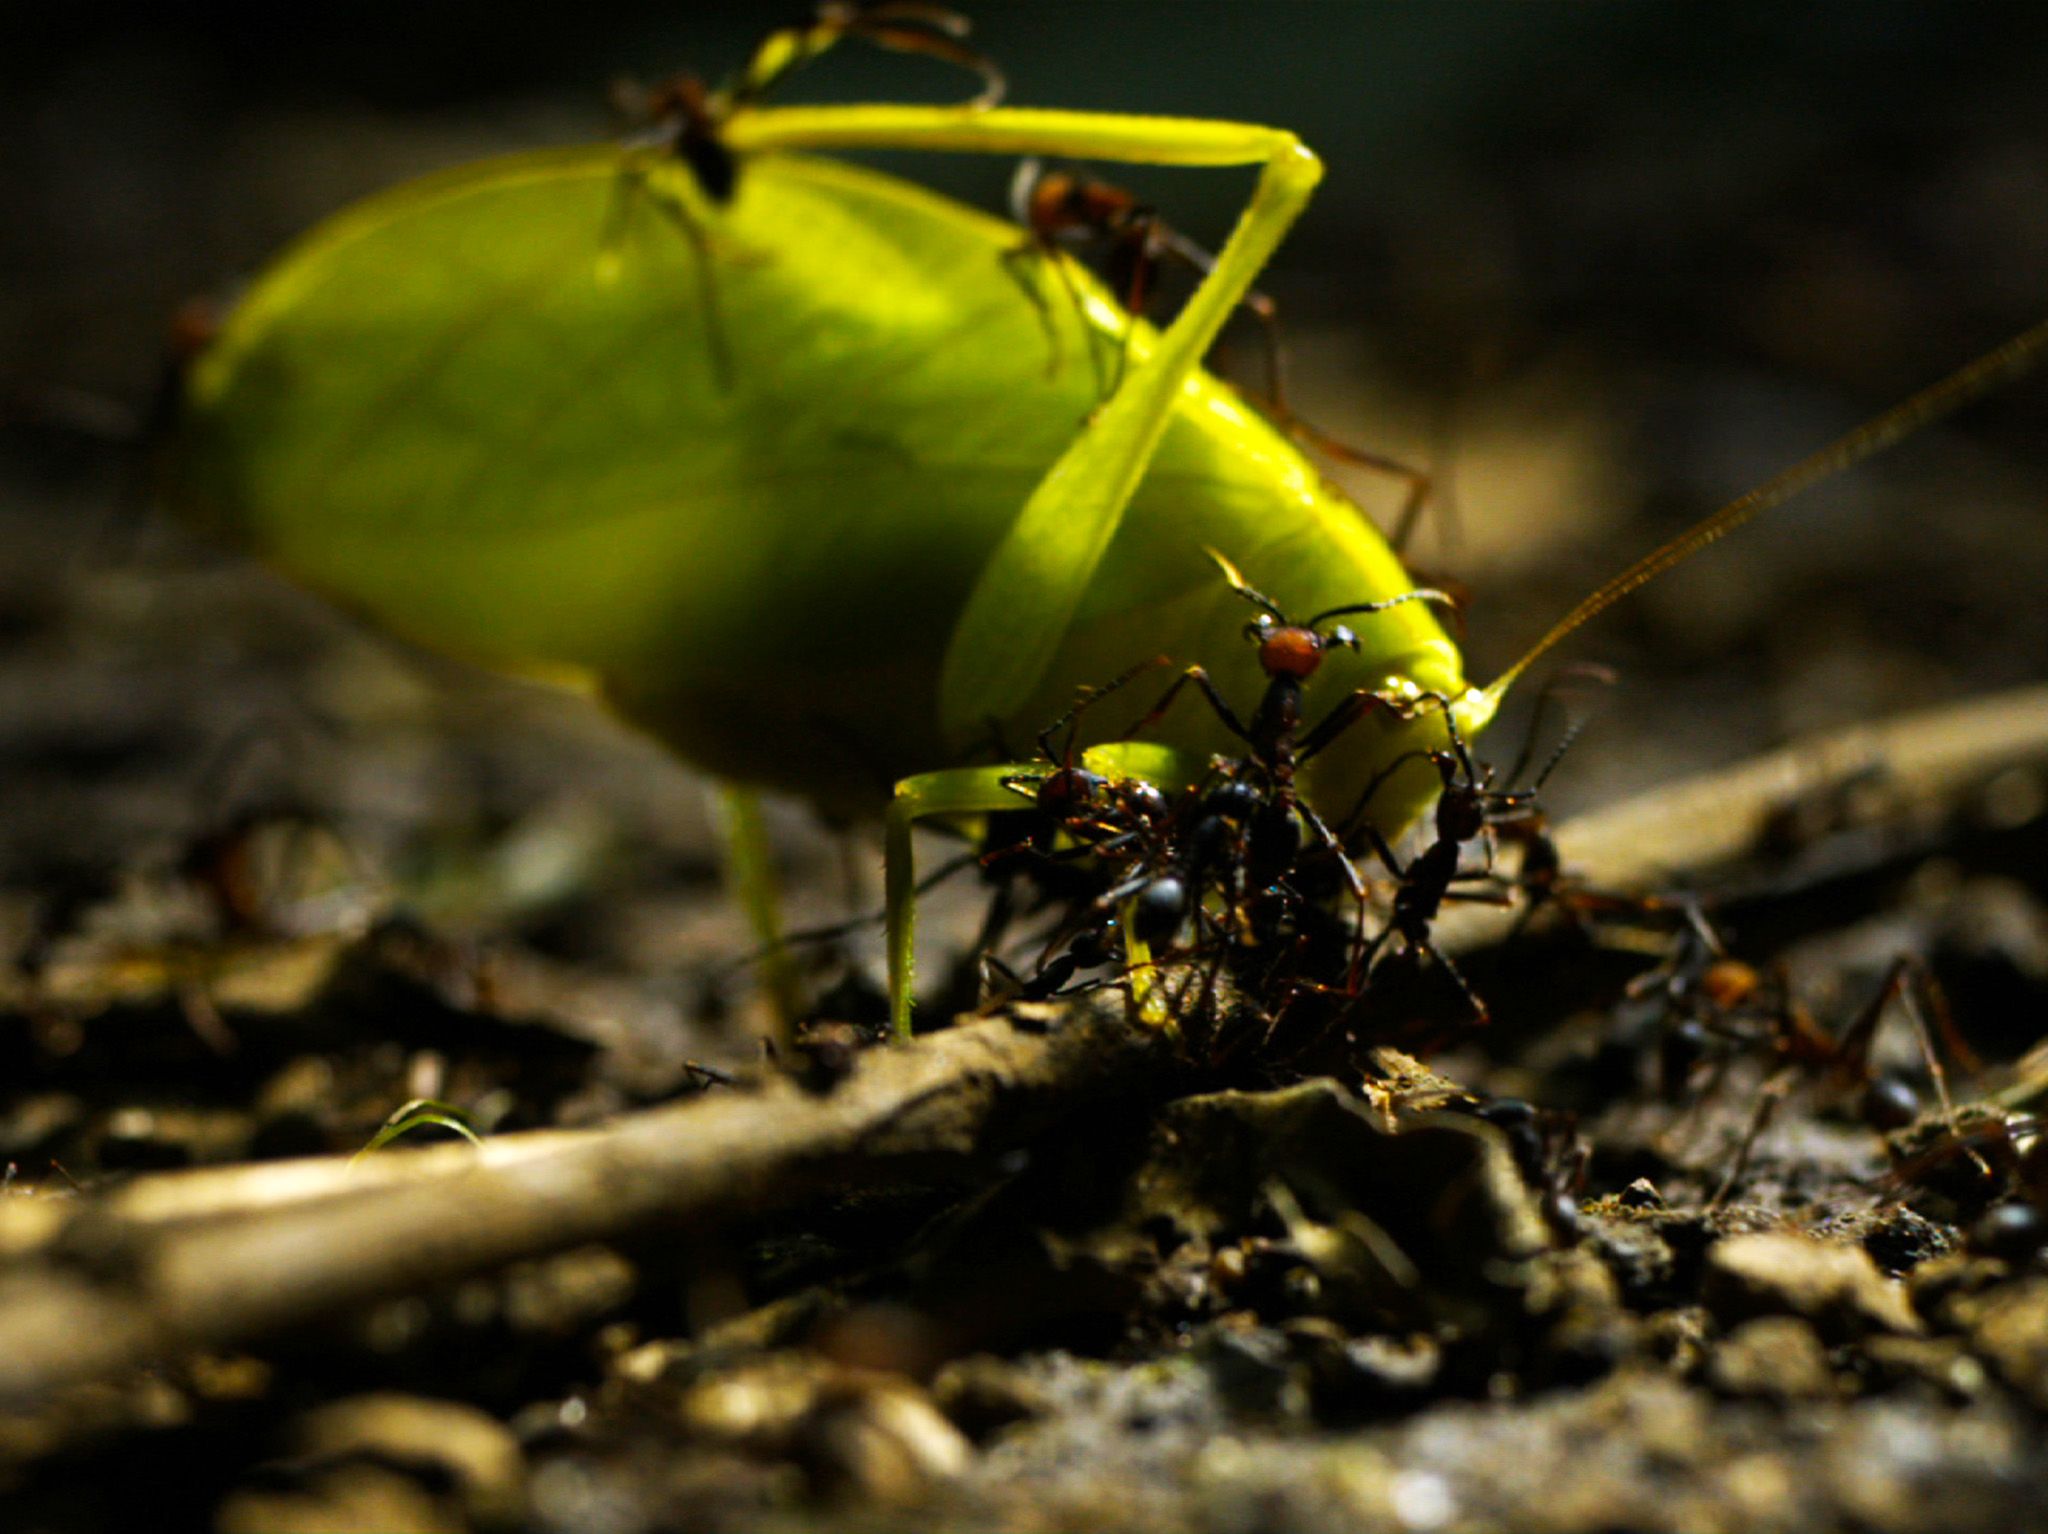 كوستاريكا: مستعمرات النمل المُجند Eciton burchelli، تتراوح... [Photo of the day - ديسمبر 2019]